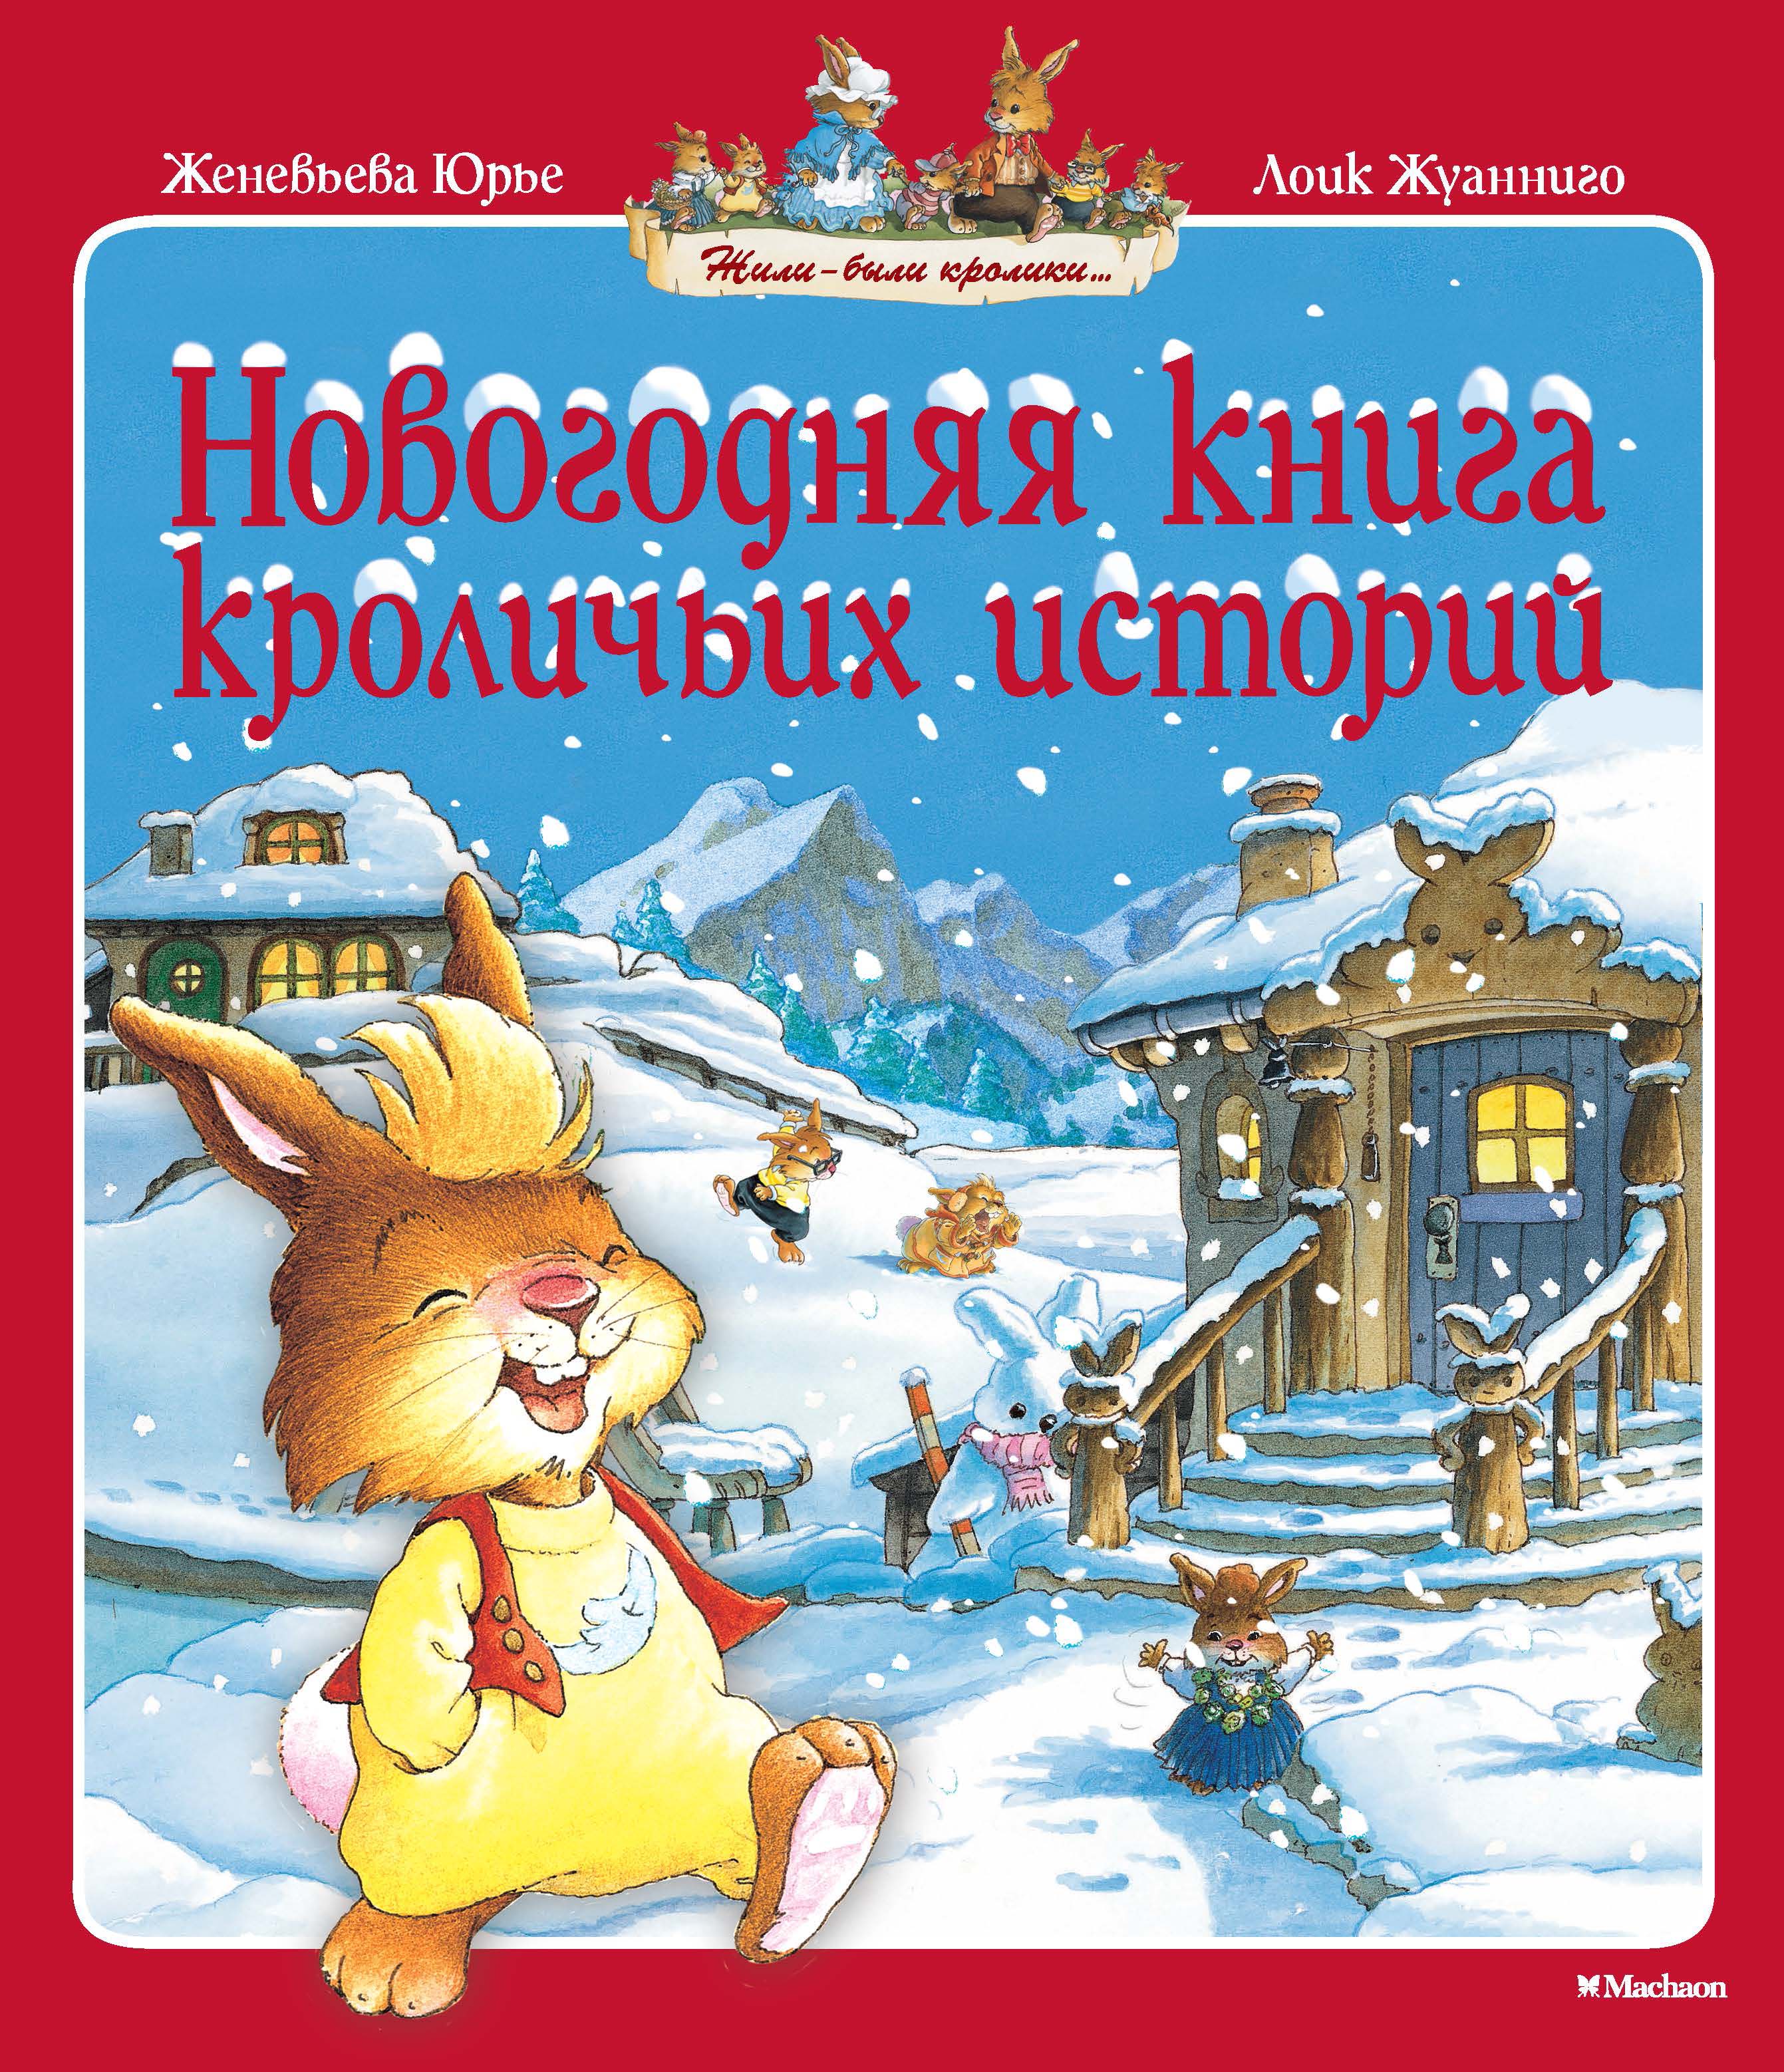 Купить книгу новый год. Юрье, ж. «Новогодняя книга кроличьих историй».. Новогодняя книга кроличьих историй : сказочные истории.